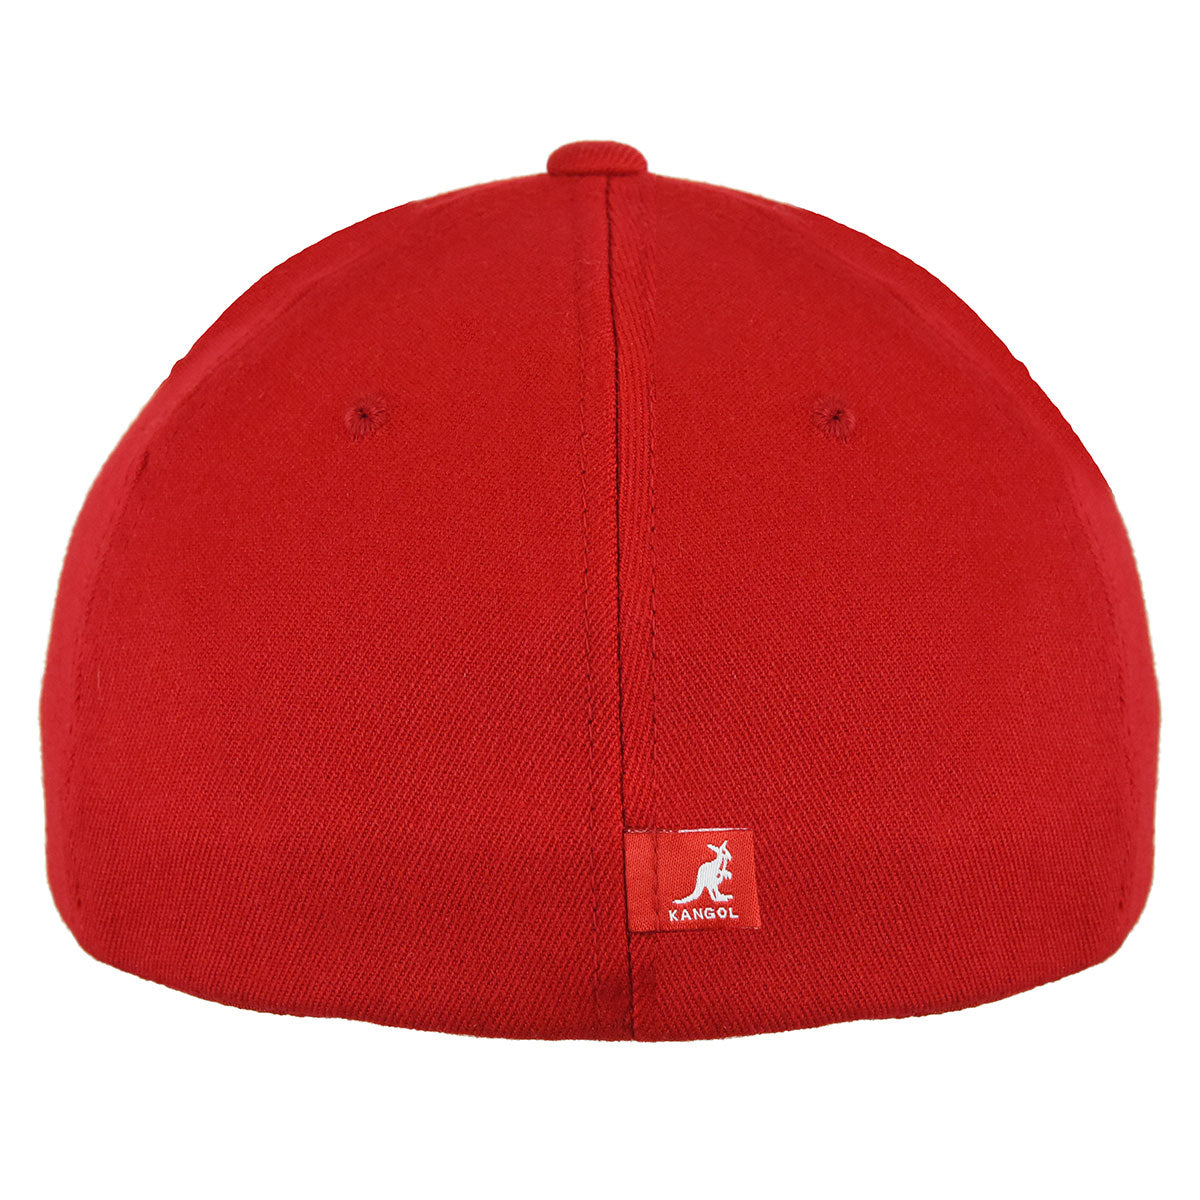 Kangol Wool Stark Flexfit Legum and – Baseball Red Cap